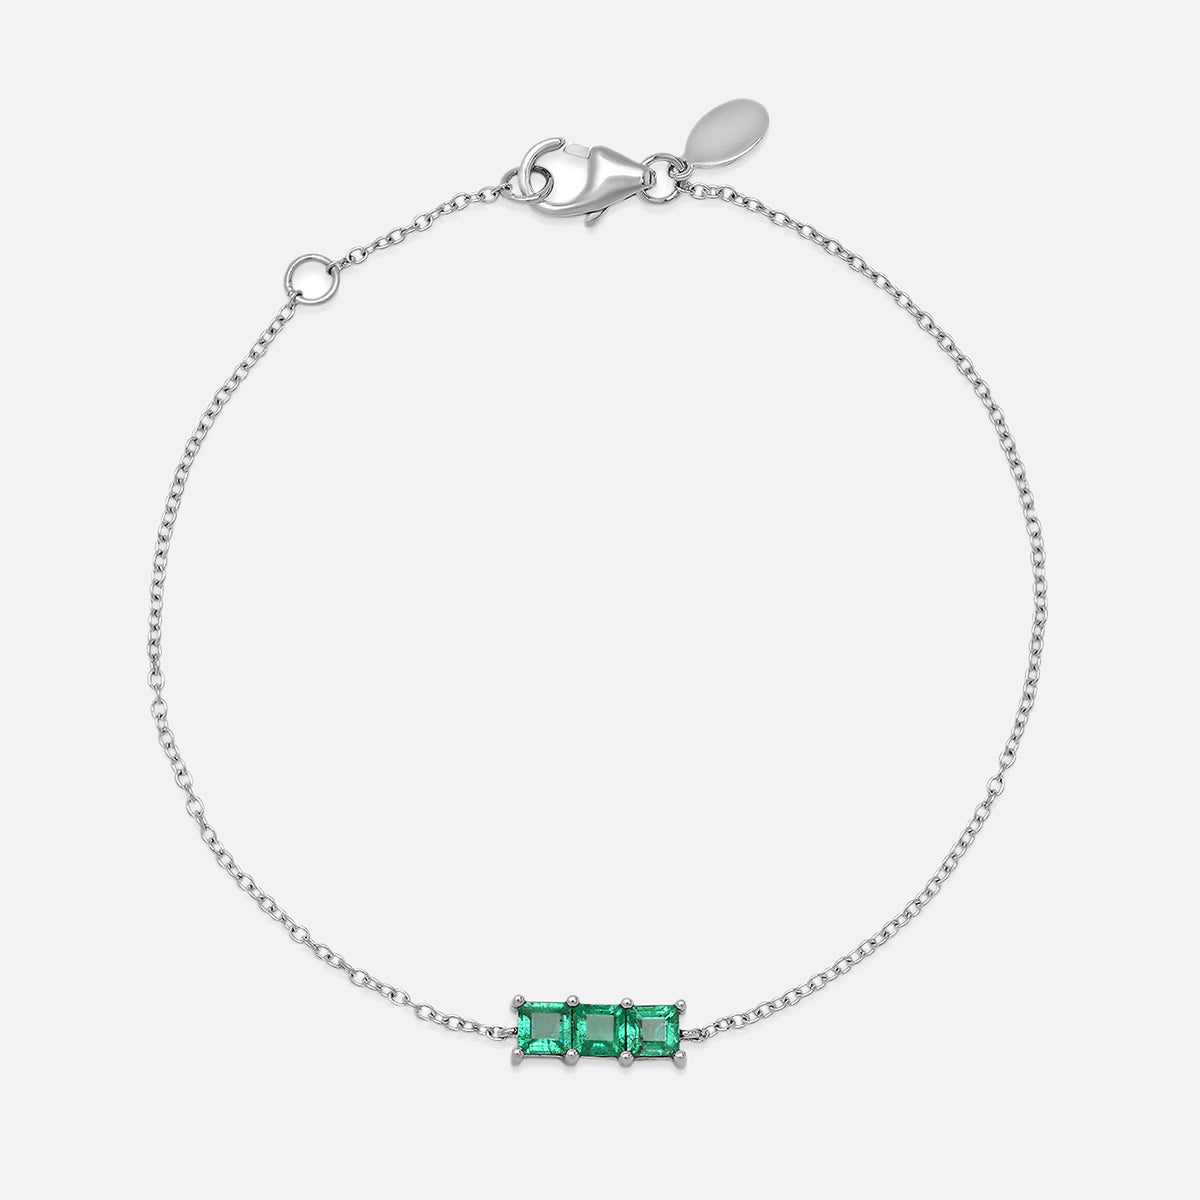 Triple Emerald Princess Cut Bracelet